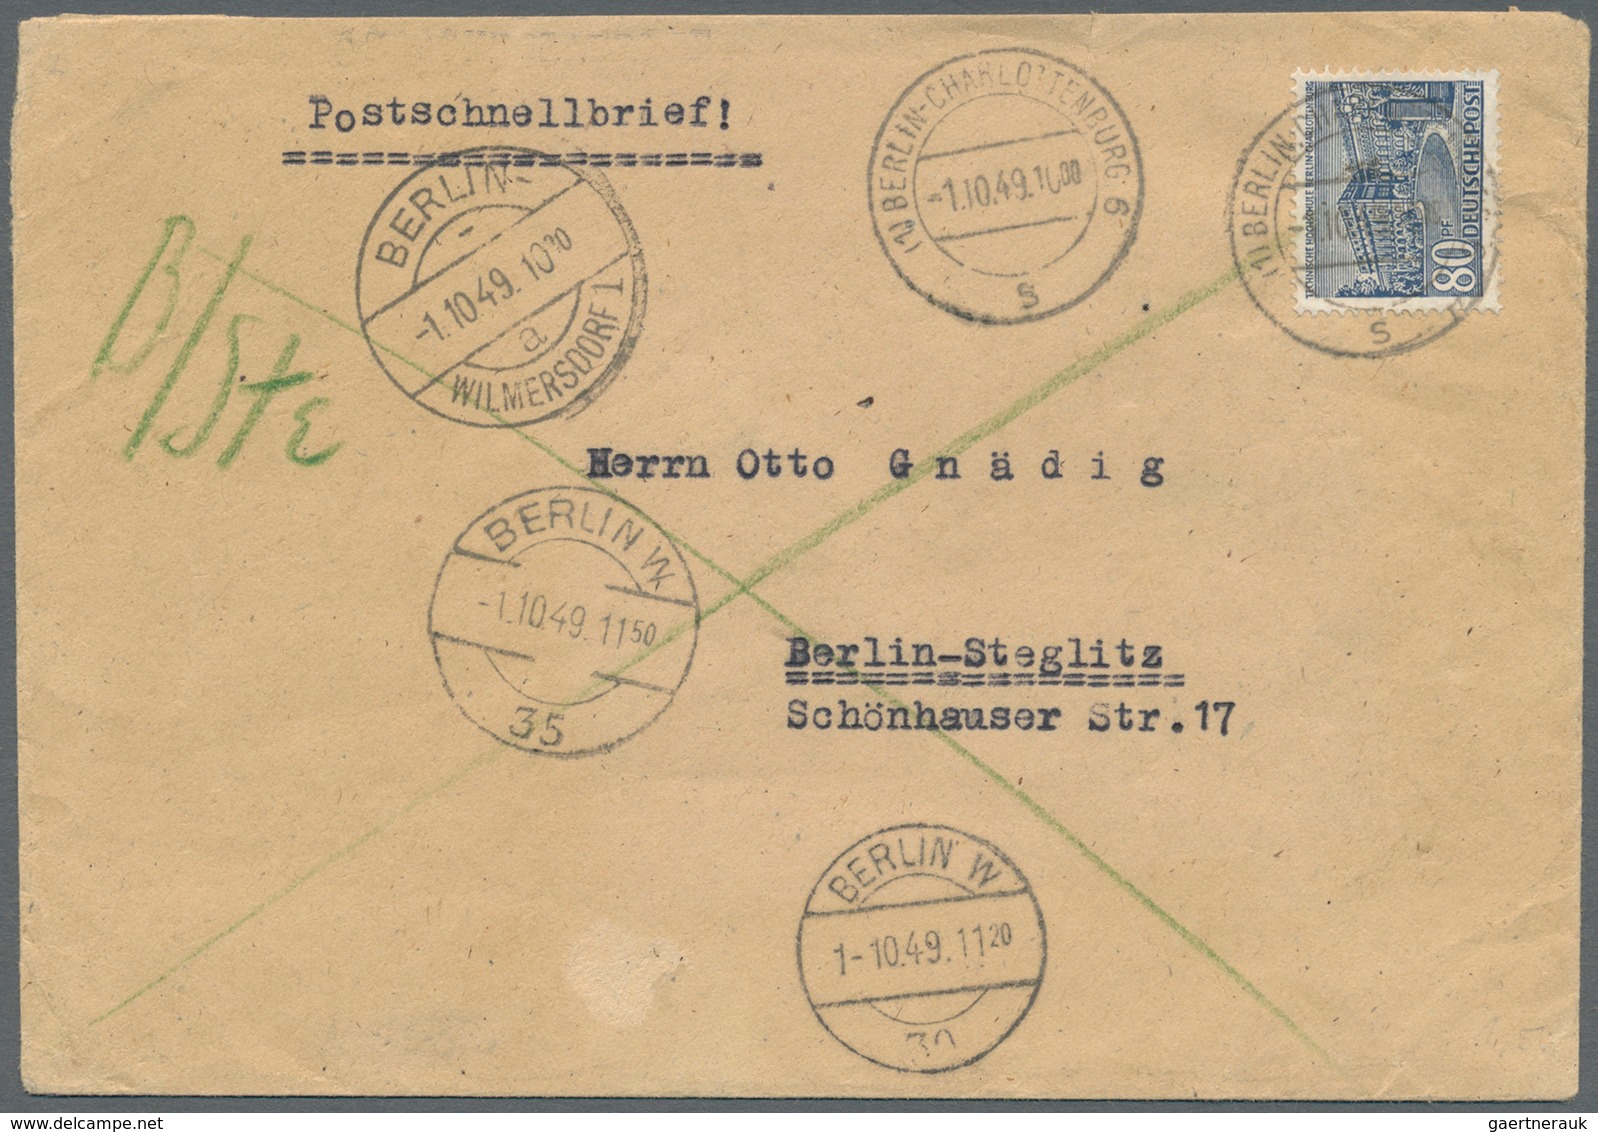 Berlin - Postschnelldienst: 1949/53:  Kleiner Posten von vier Schnelldienstbriefen, alle mit 80 Pfen